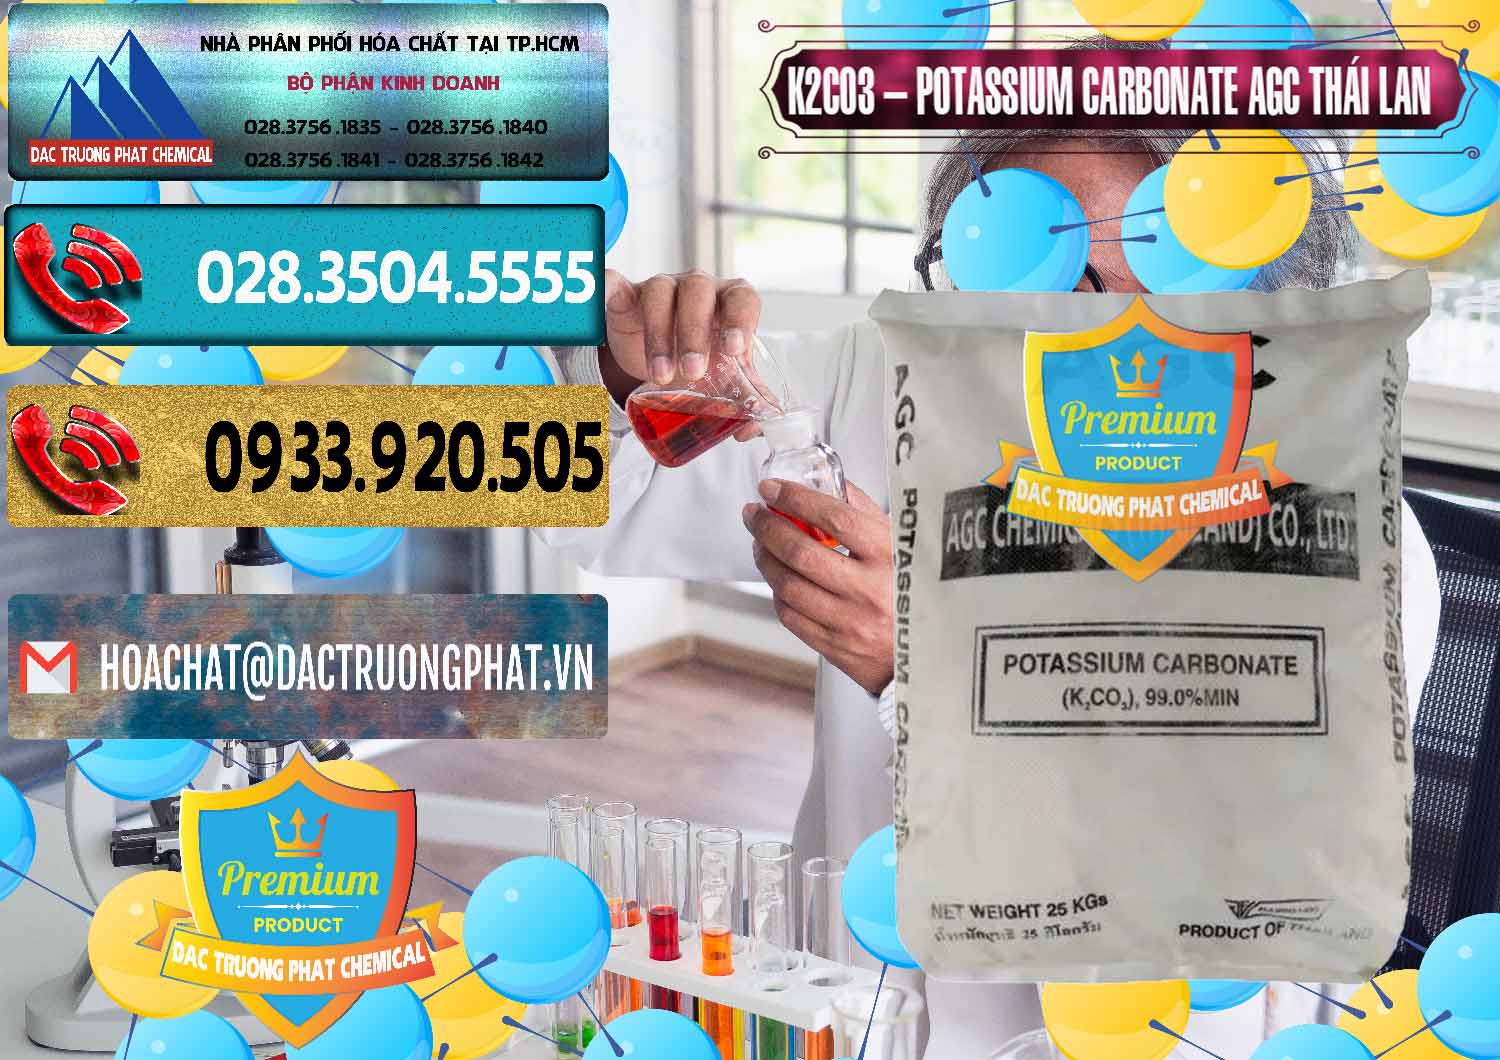 Nhà nhập khẩu và bán K2Co3 – Potassium Carbonate AGC Thái Lan Thailand - 0471 - Cty phân phối và nhập khẩu hóa chất tại TP.HCM - hoachatdetnhuom.com